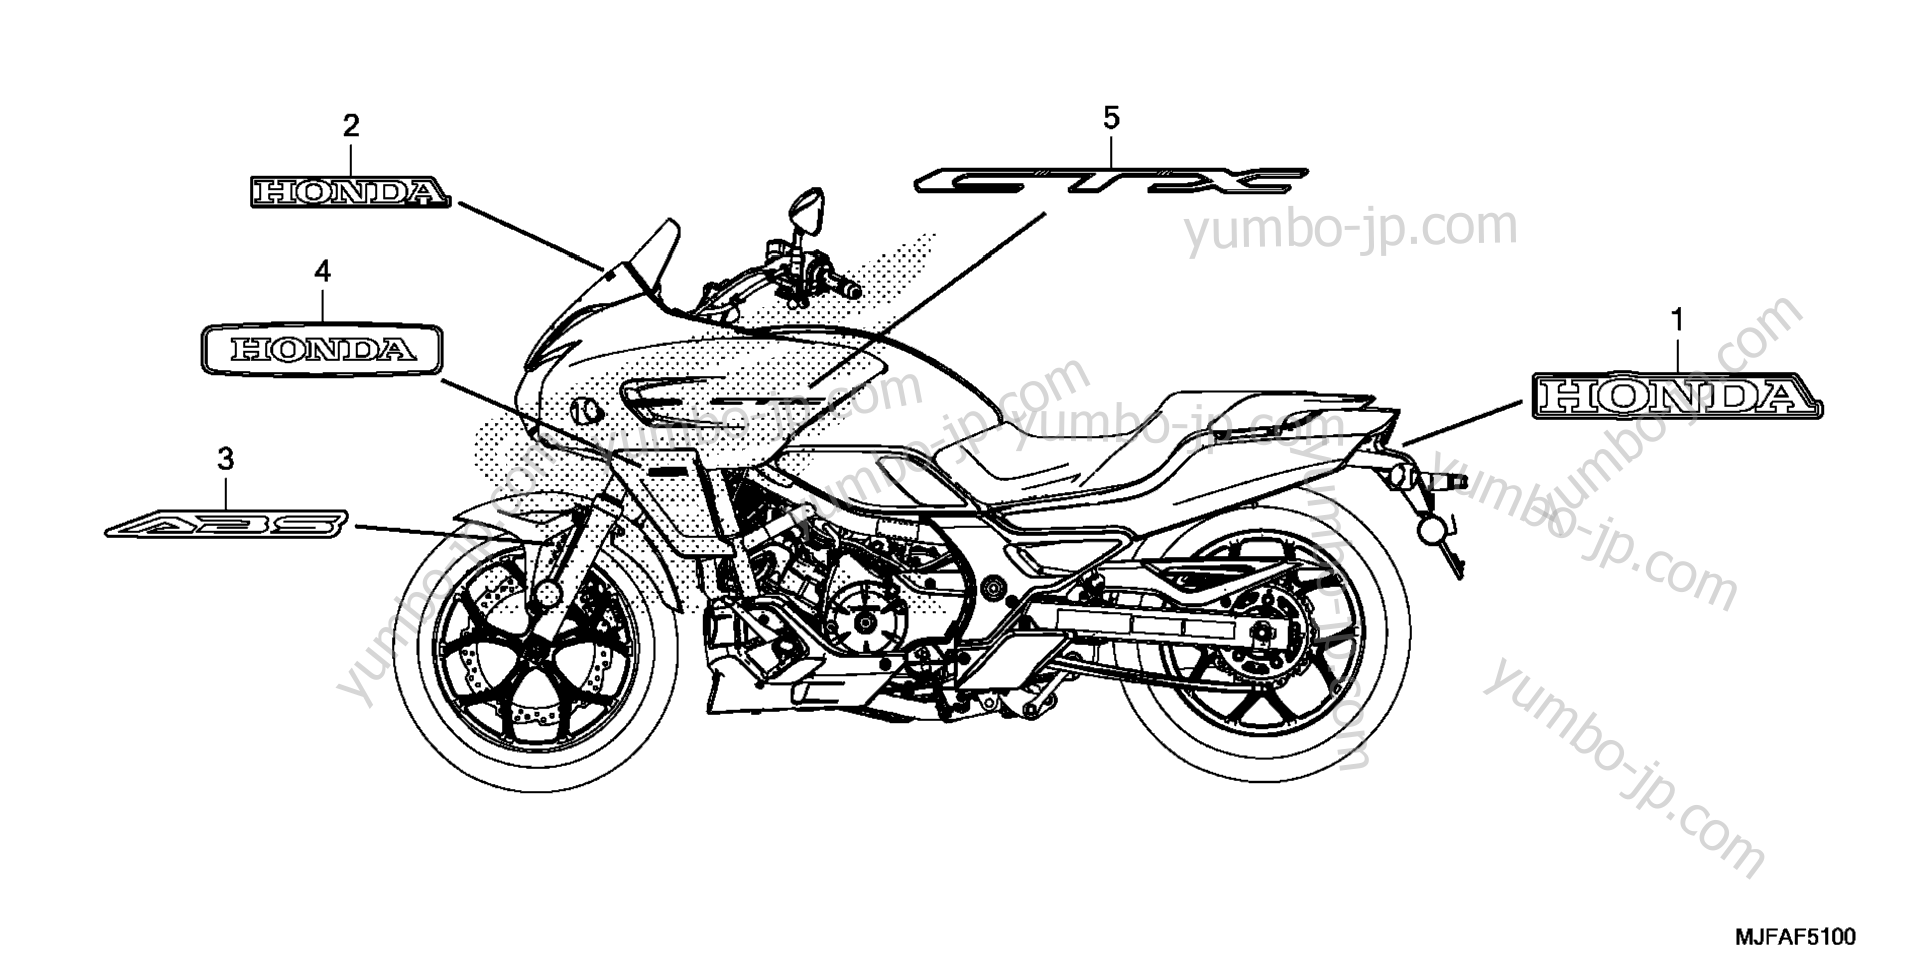 MARK / EMBLEM for motorcycles HONDA CTX700D A 2015 year